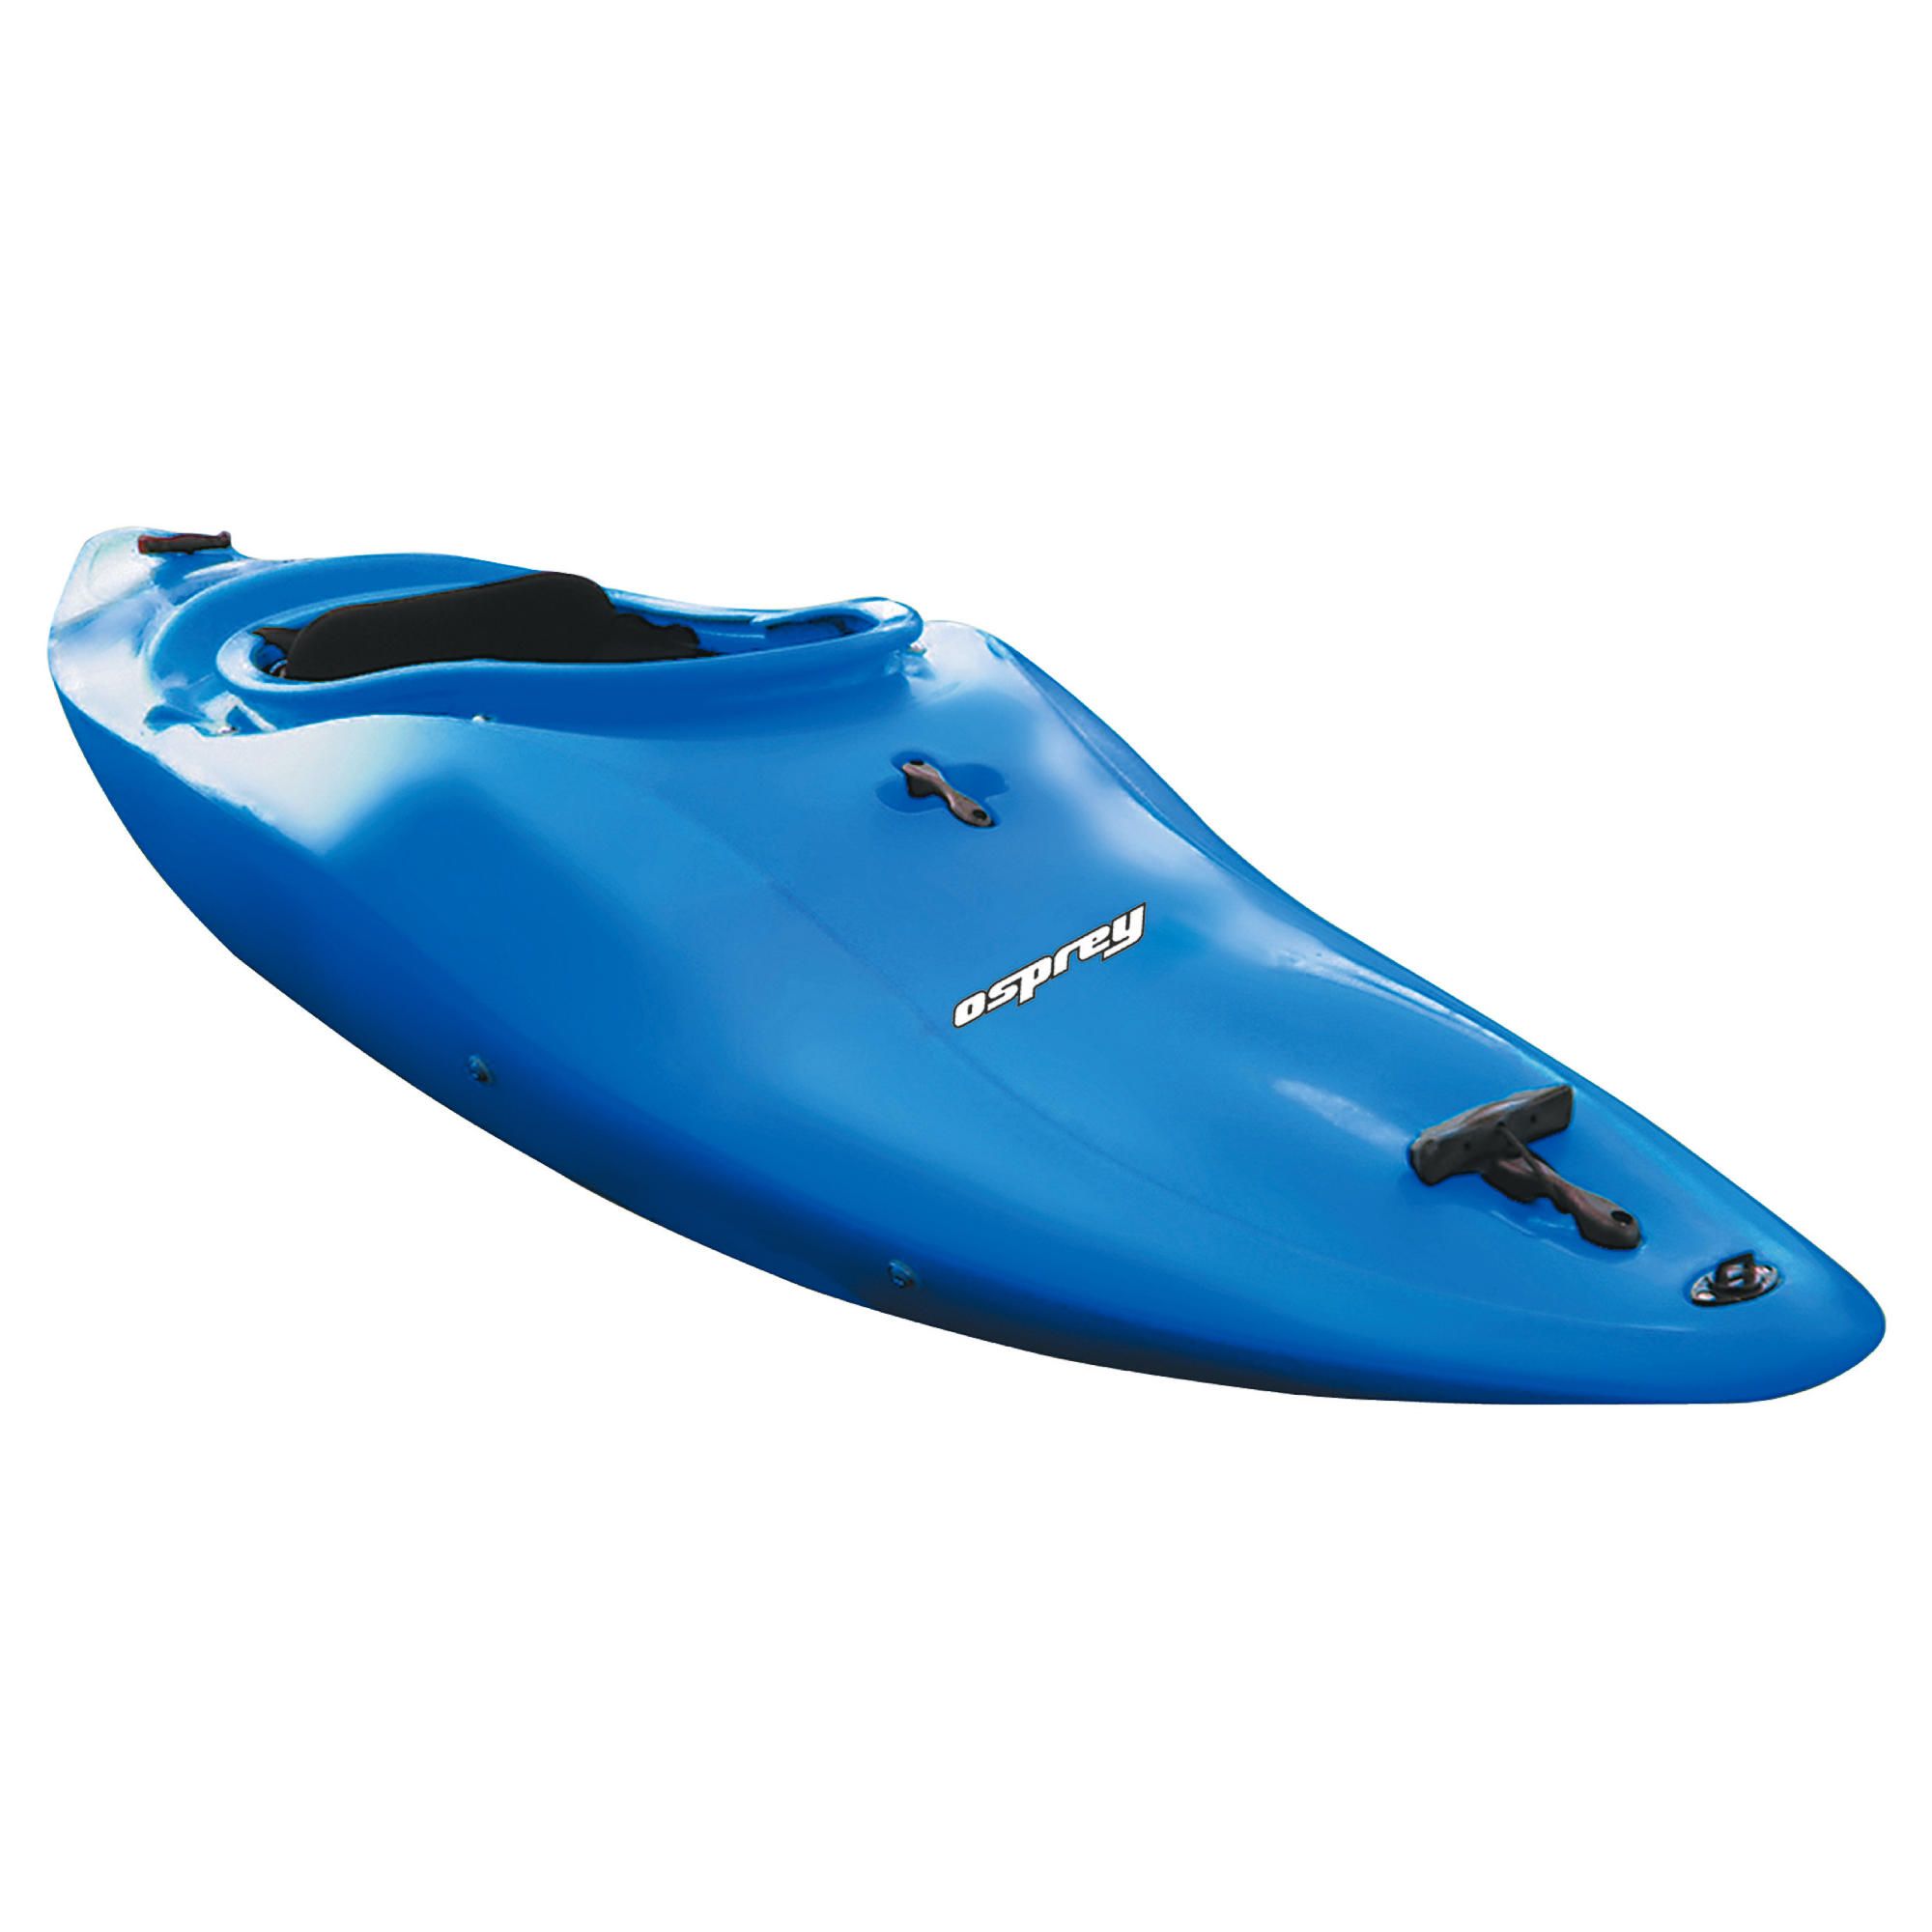 Storm White Water Kayak - Blue at Tesco Direct